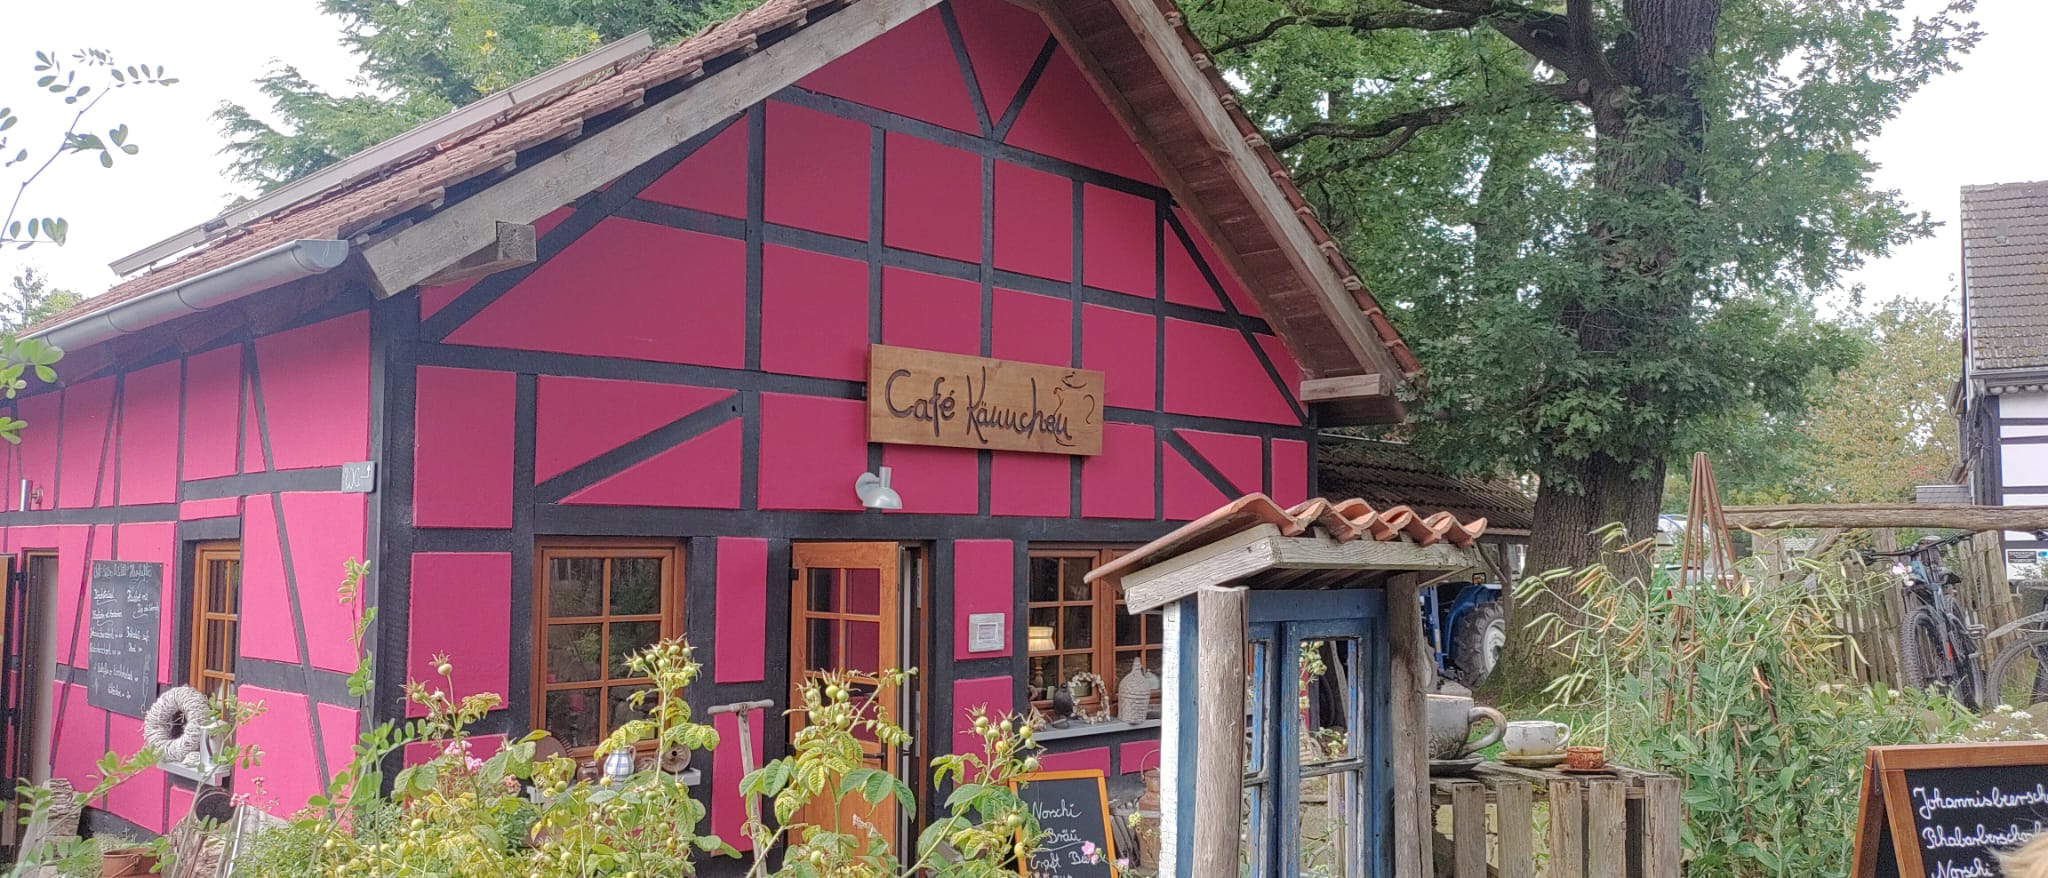 Cafe Kännchen